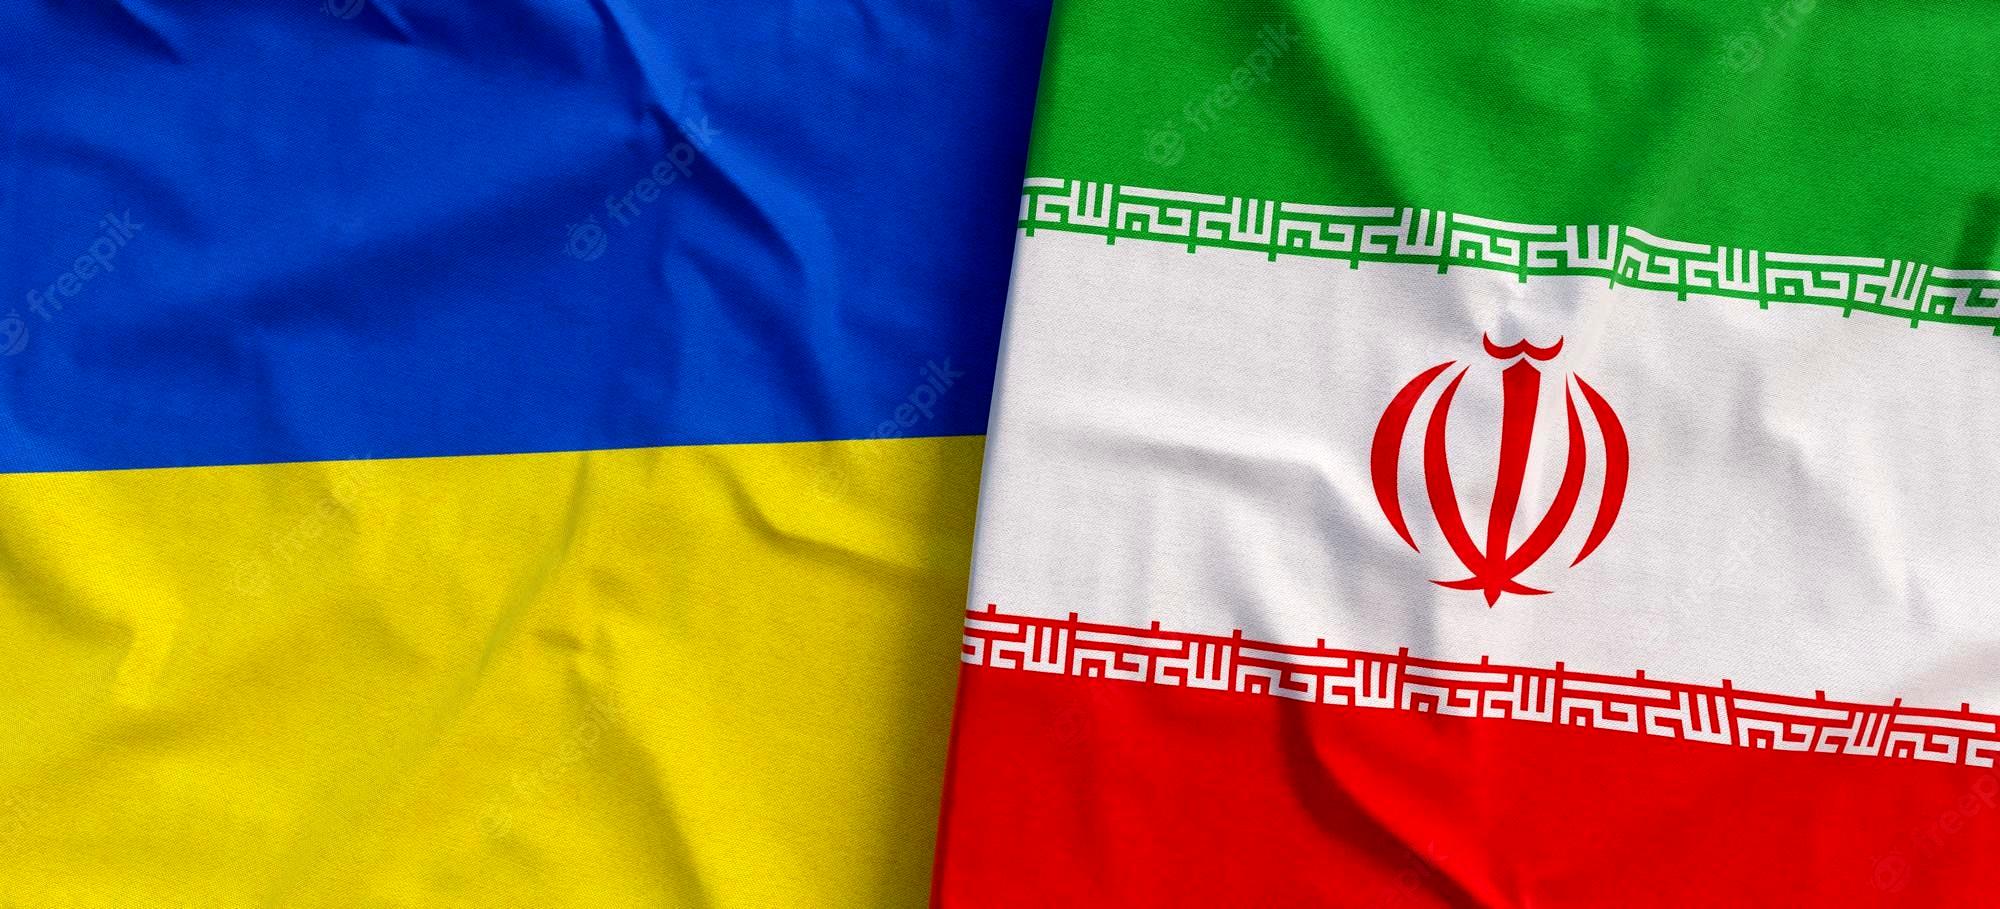  اوکراین تهدید به قطع روابط با ایران کرد